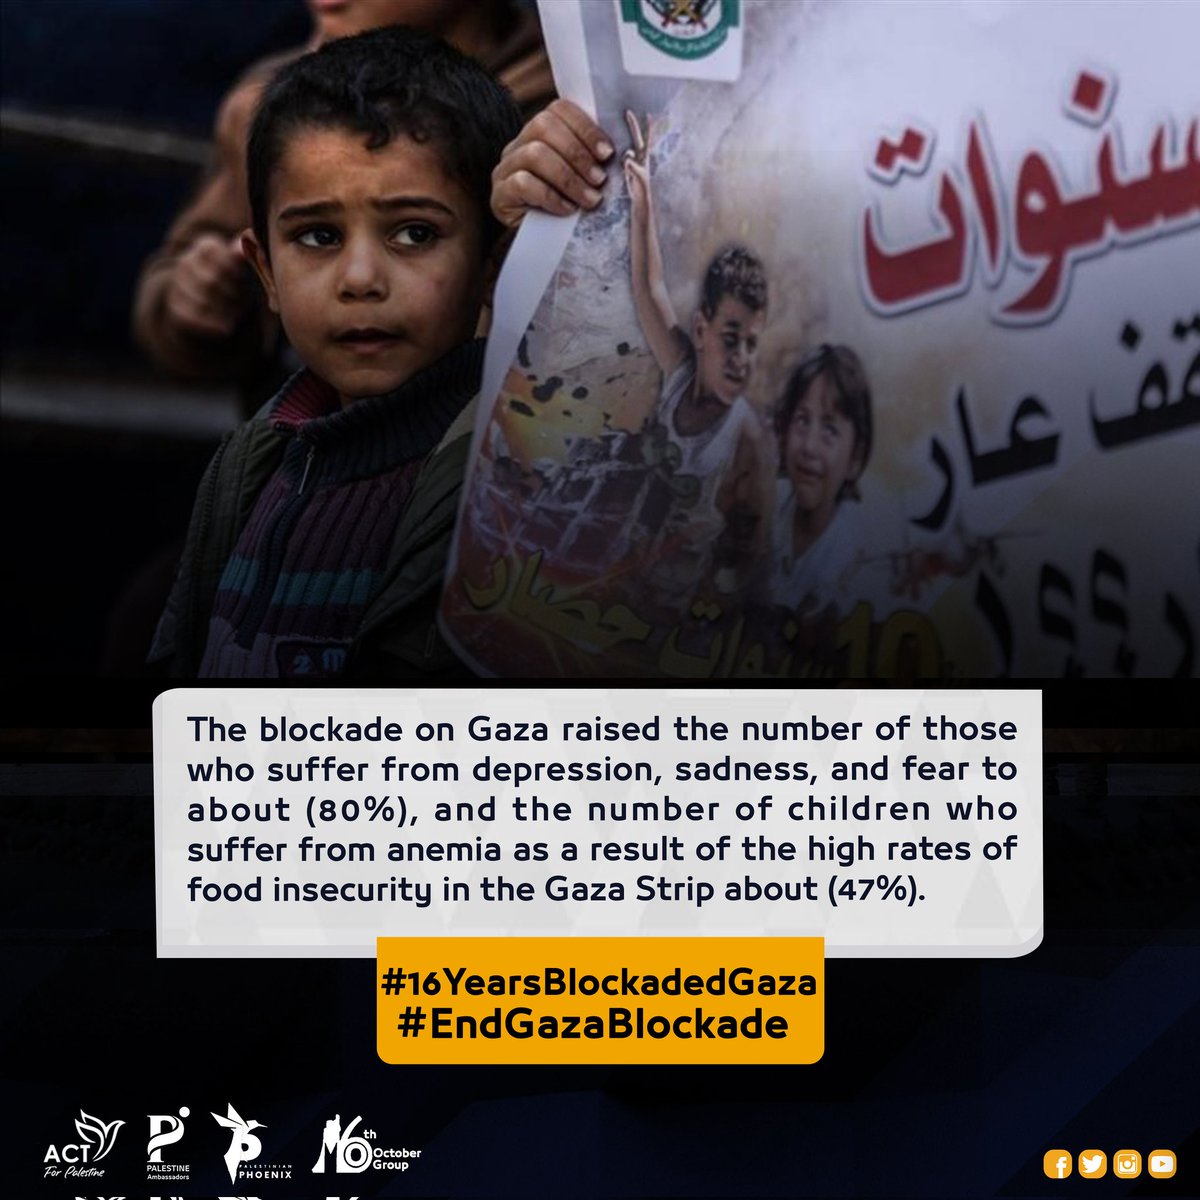 #16YearsBlockadedGaza
#EndGazaBlockade
#IsraeliCrimes